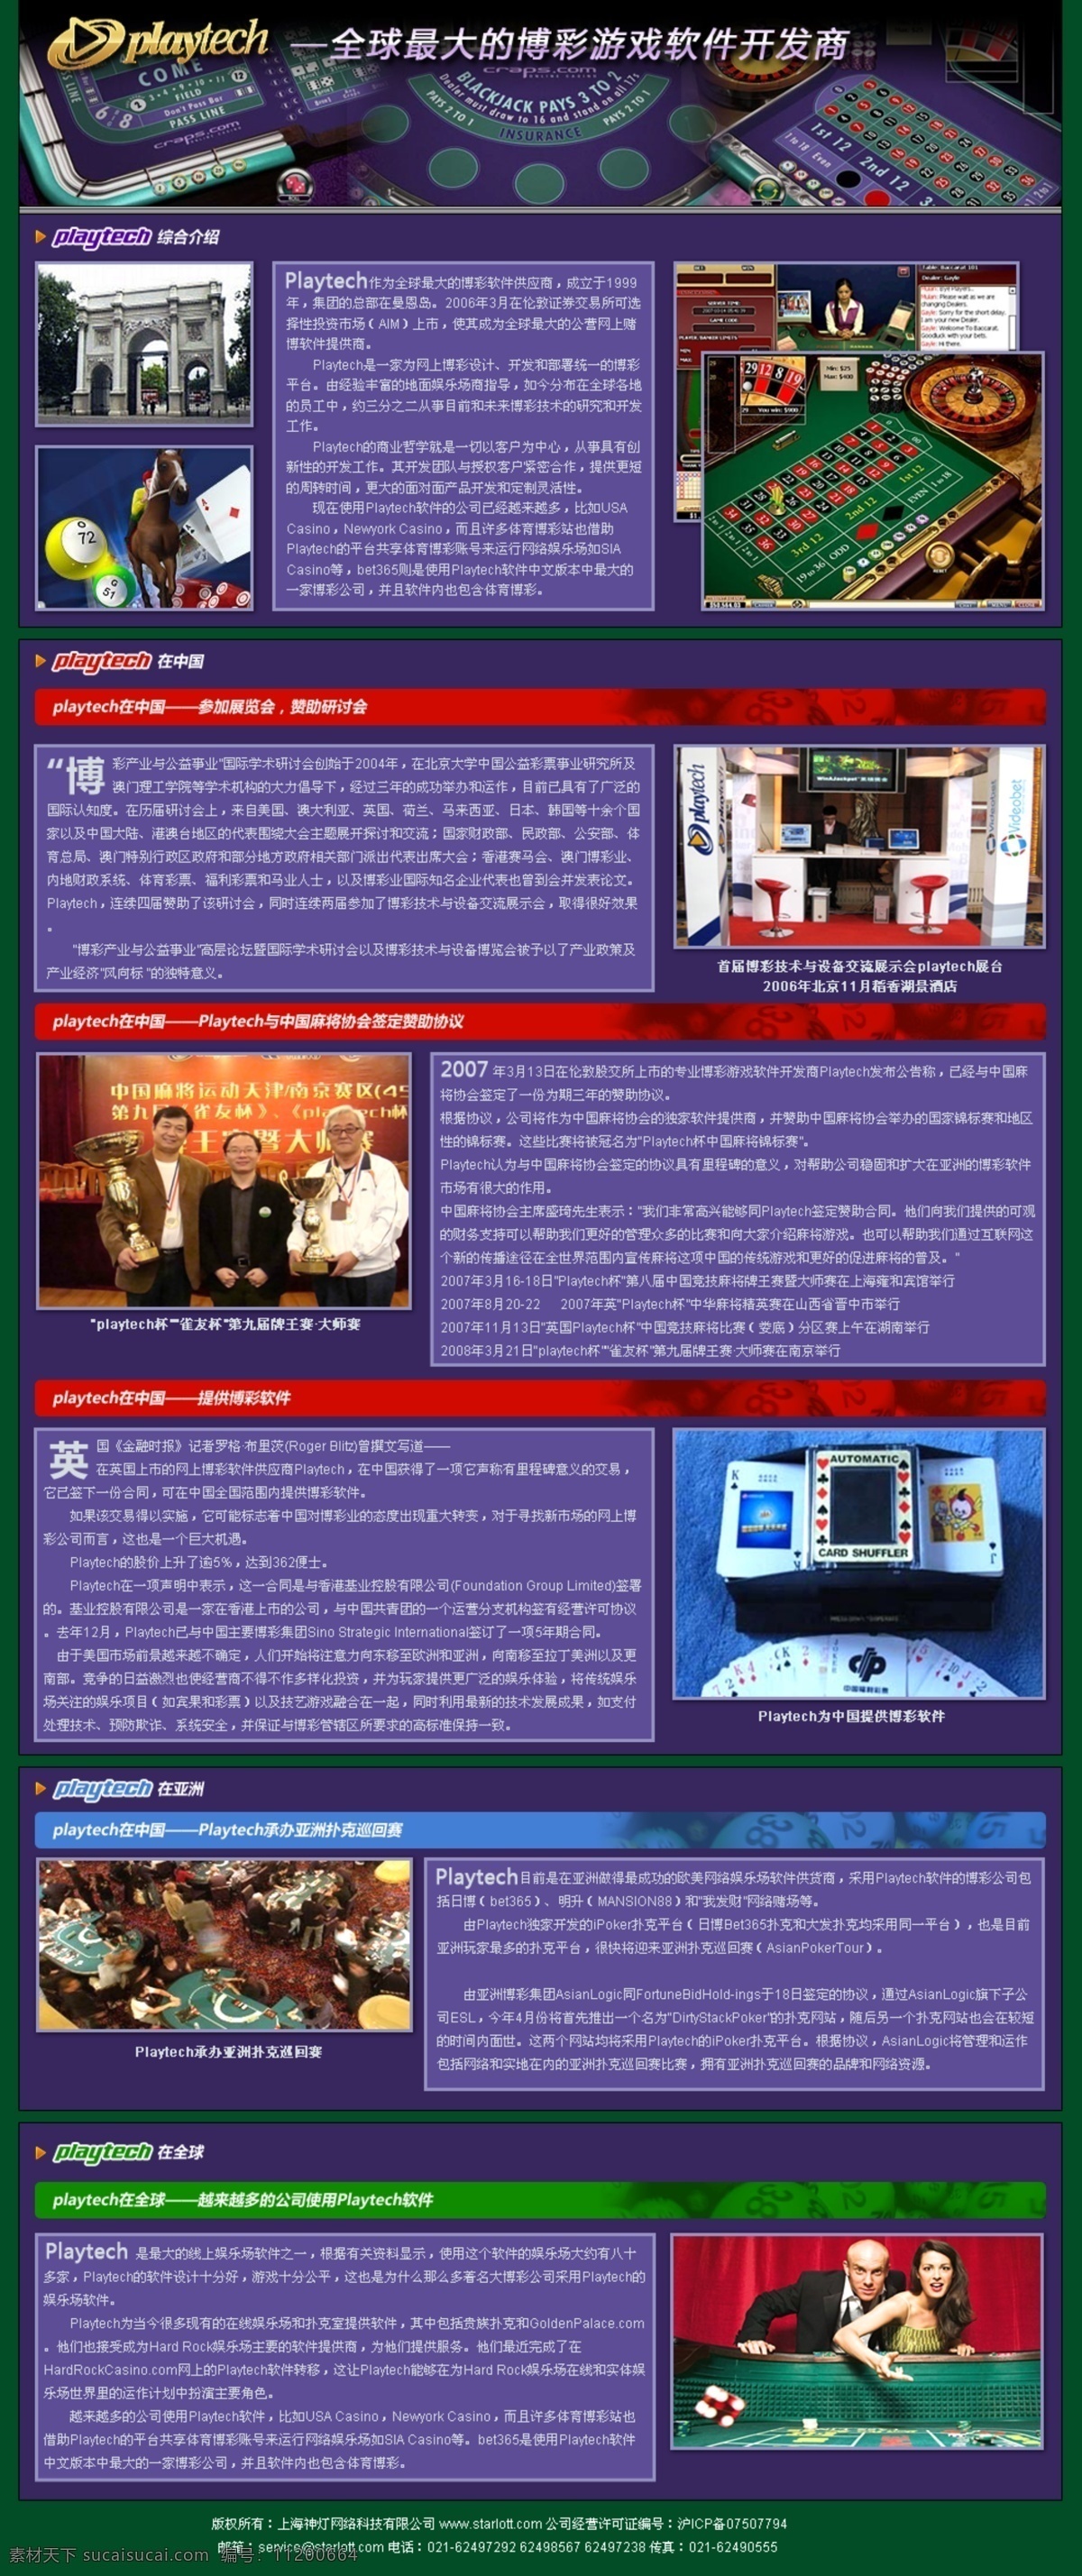 博彩 游戏公司 专题 网页模板 游戏 中国风格 专题网页模板 紫色色调 网页素材